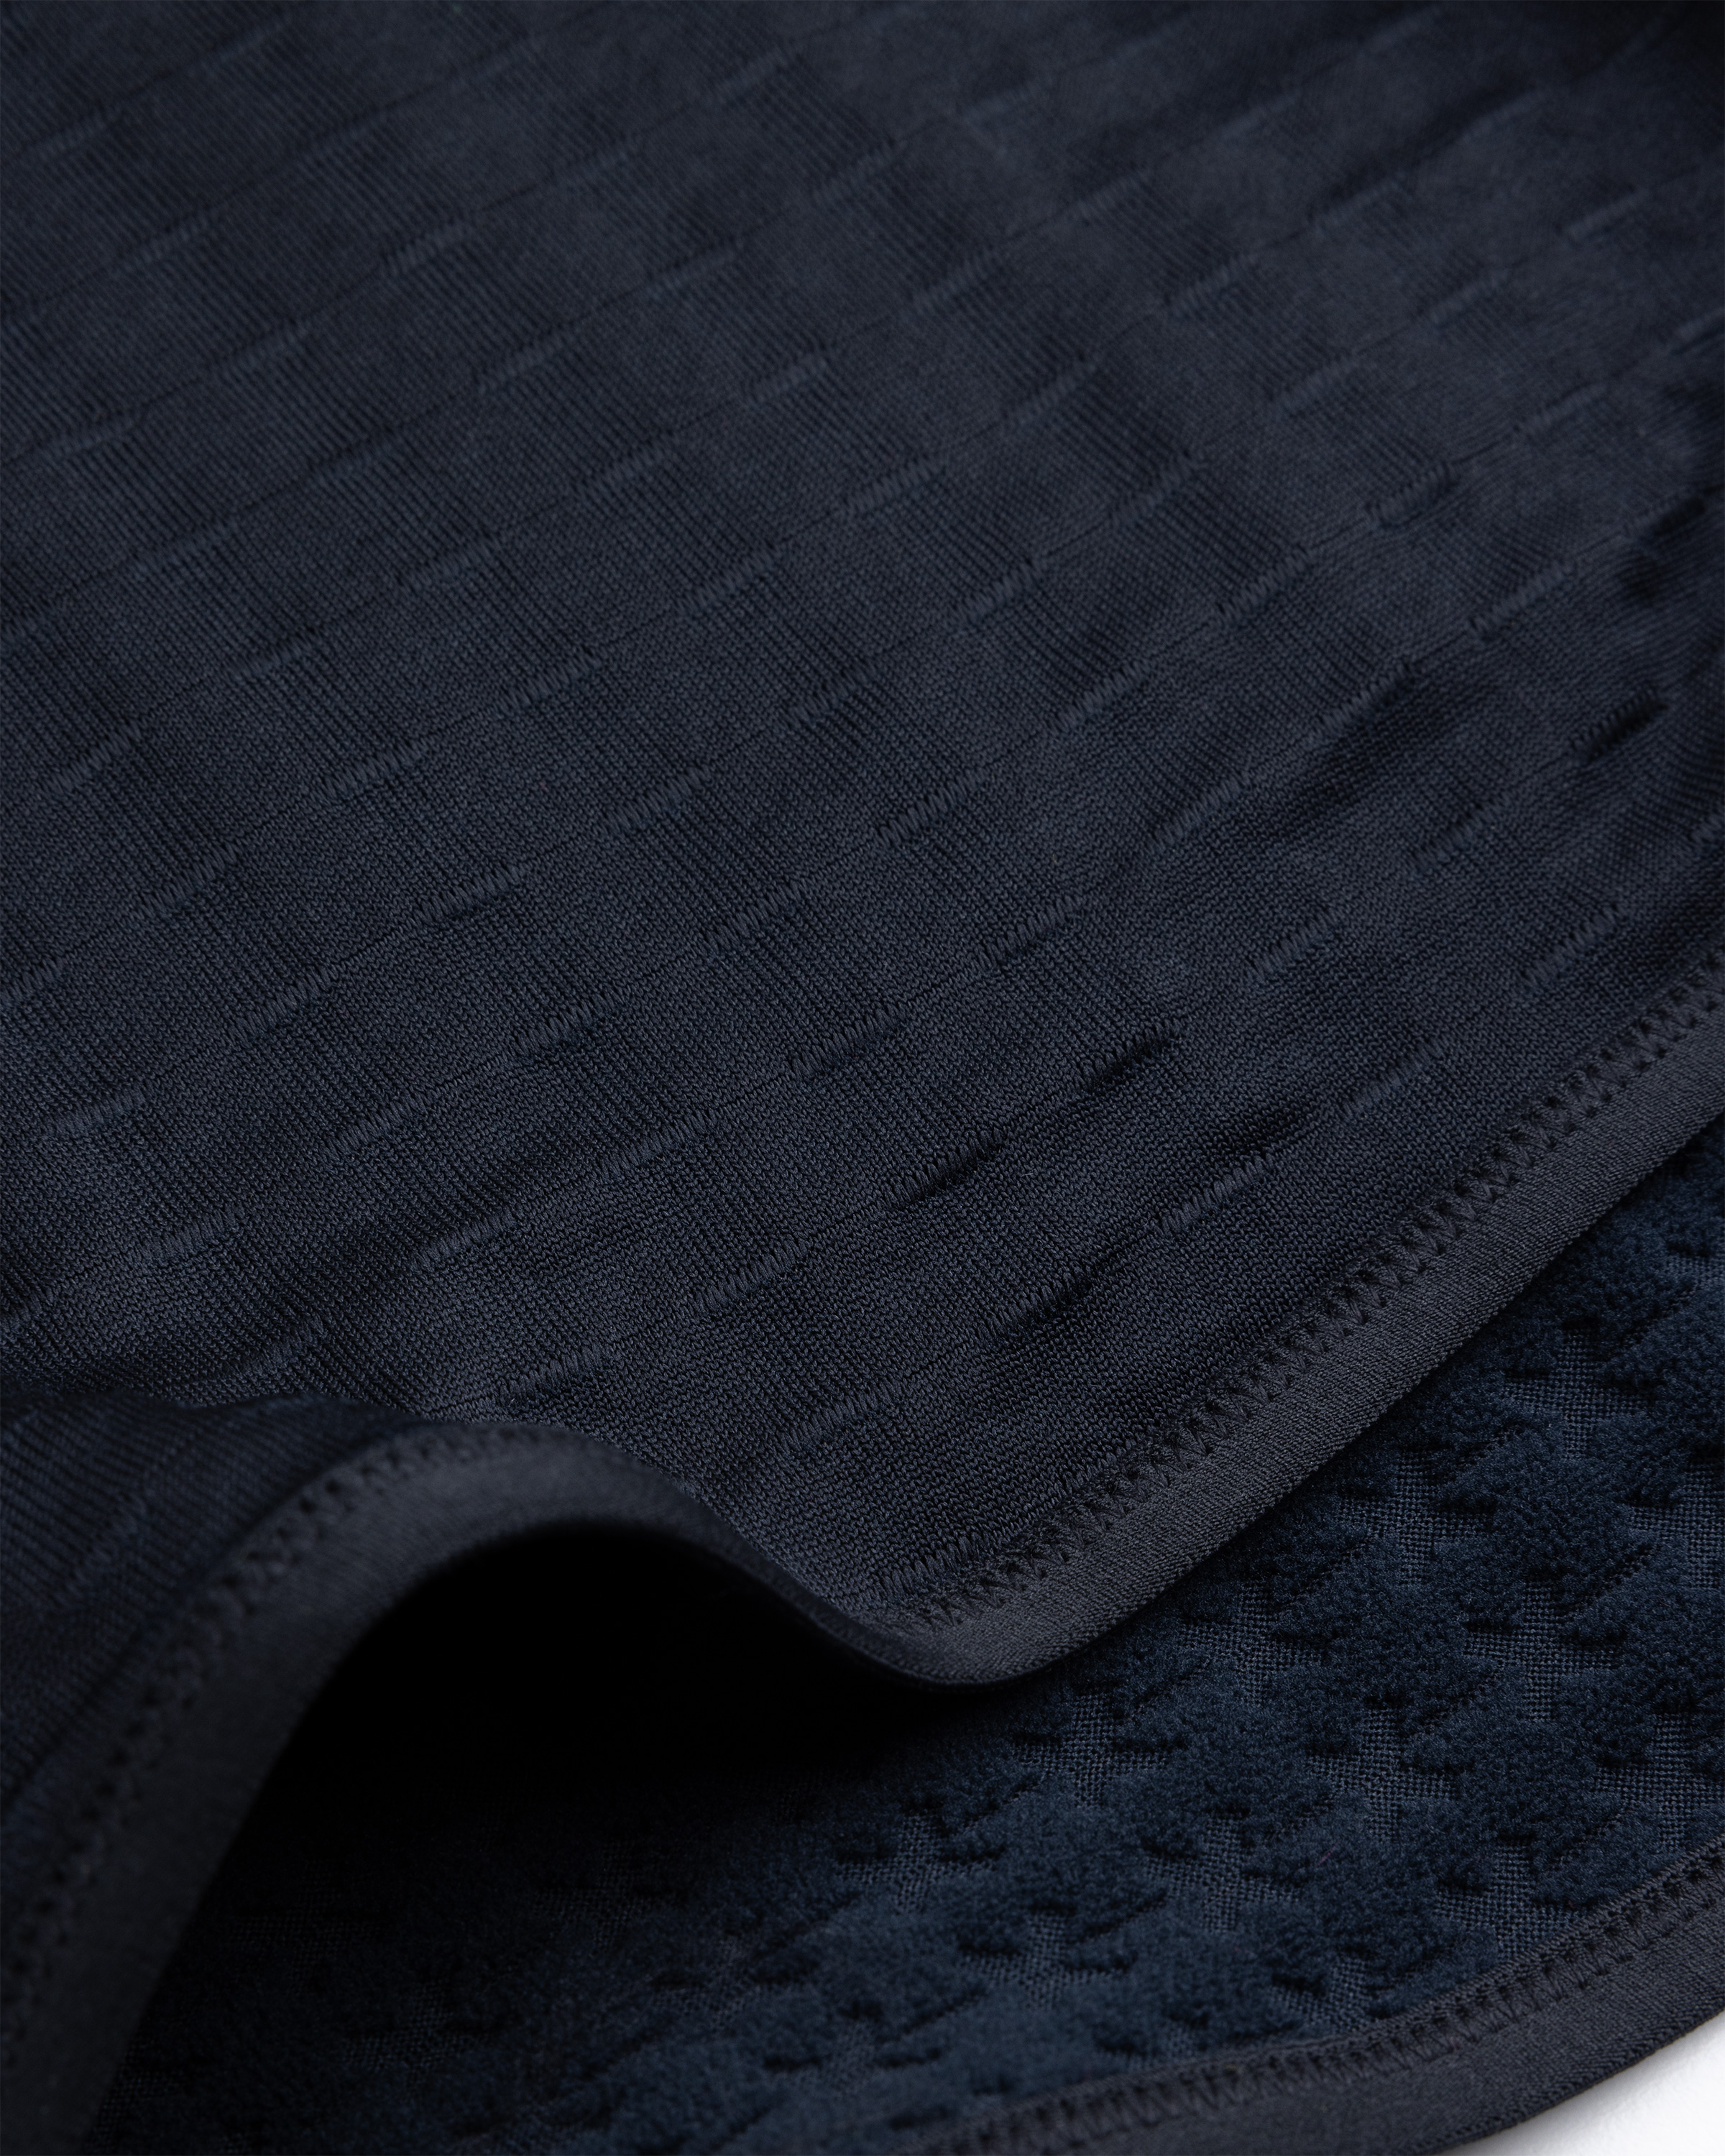 Nike x Patta – Half-Zip Long-Sleeve Top Black - Zip-Ups - Black - Image 8